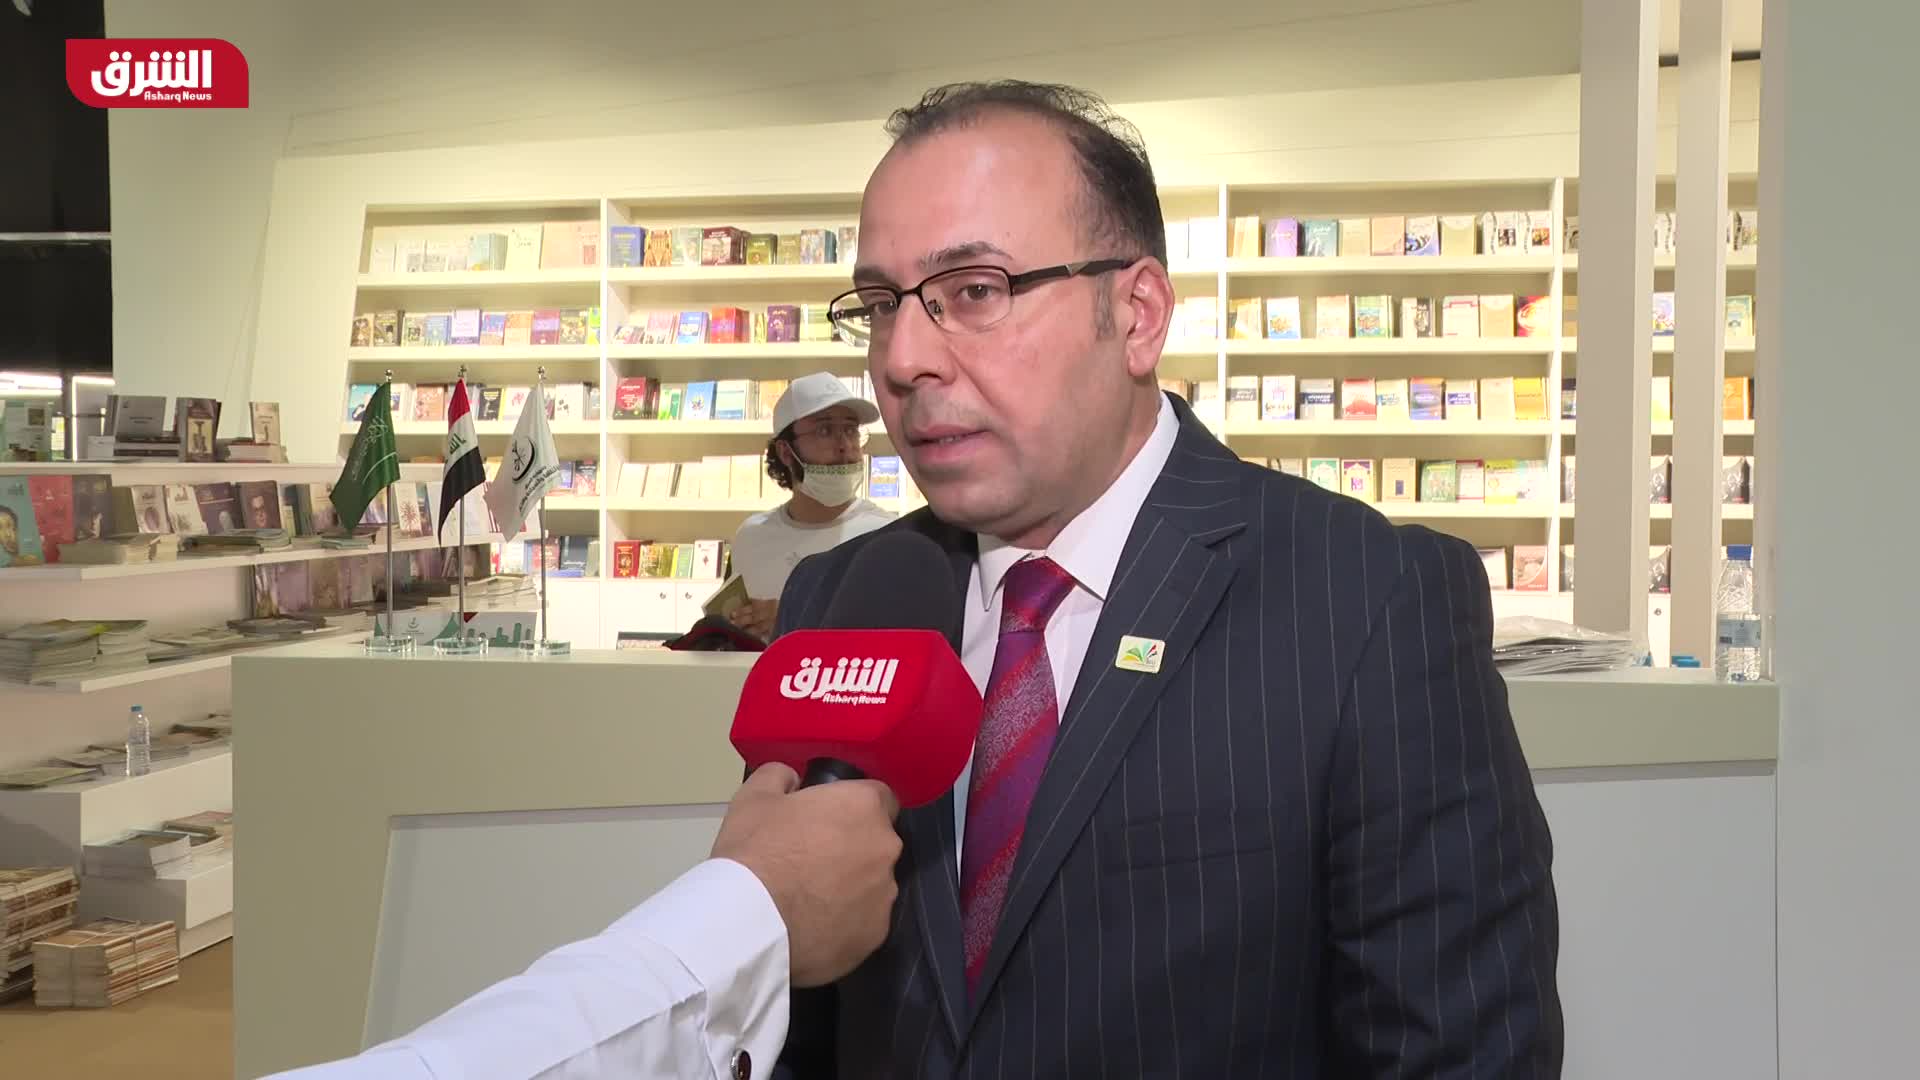 د.عساف الساعدي - مدير الجناح العراقي بمعرض الرياض للكتاب